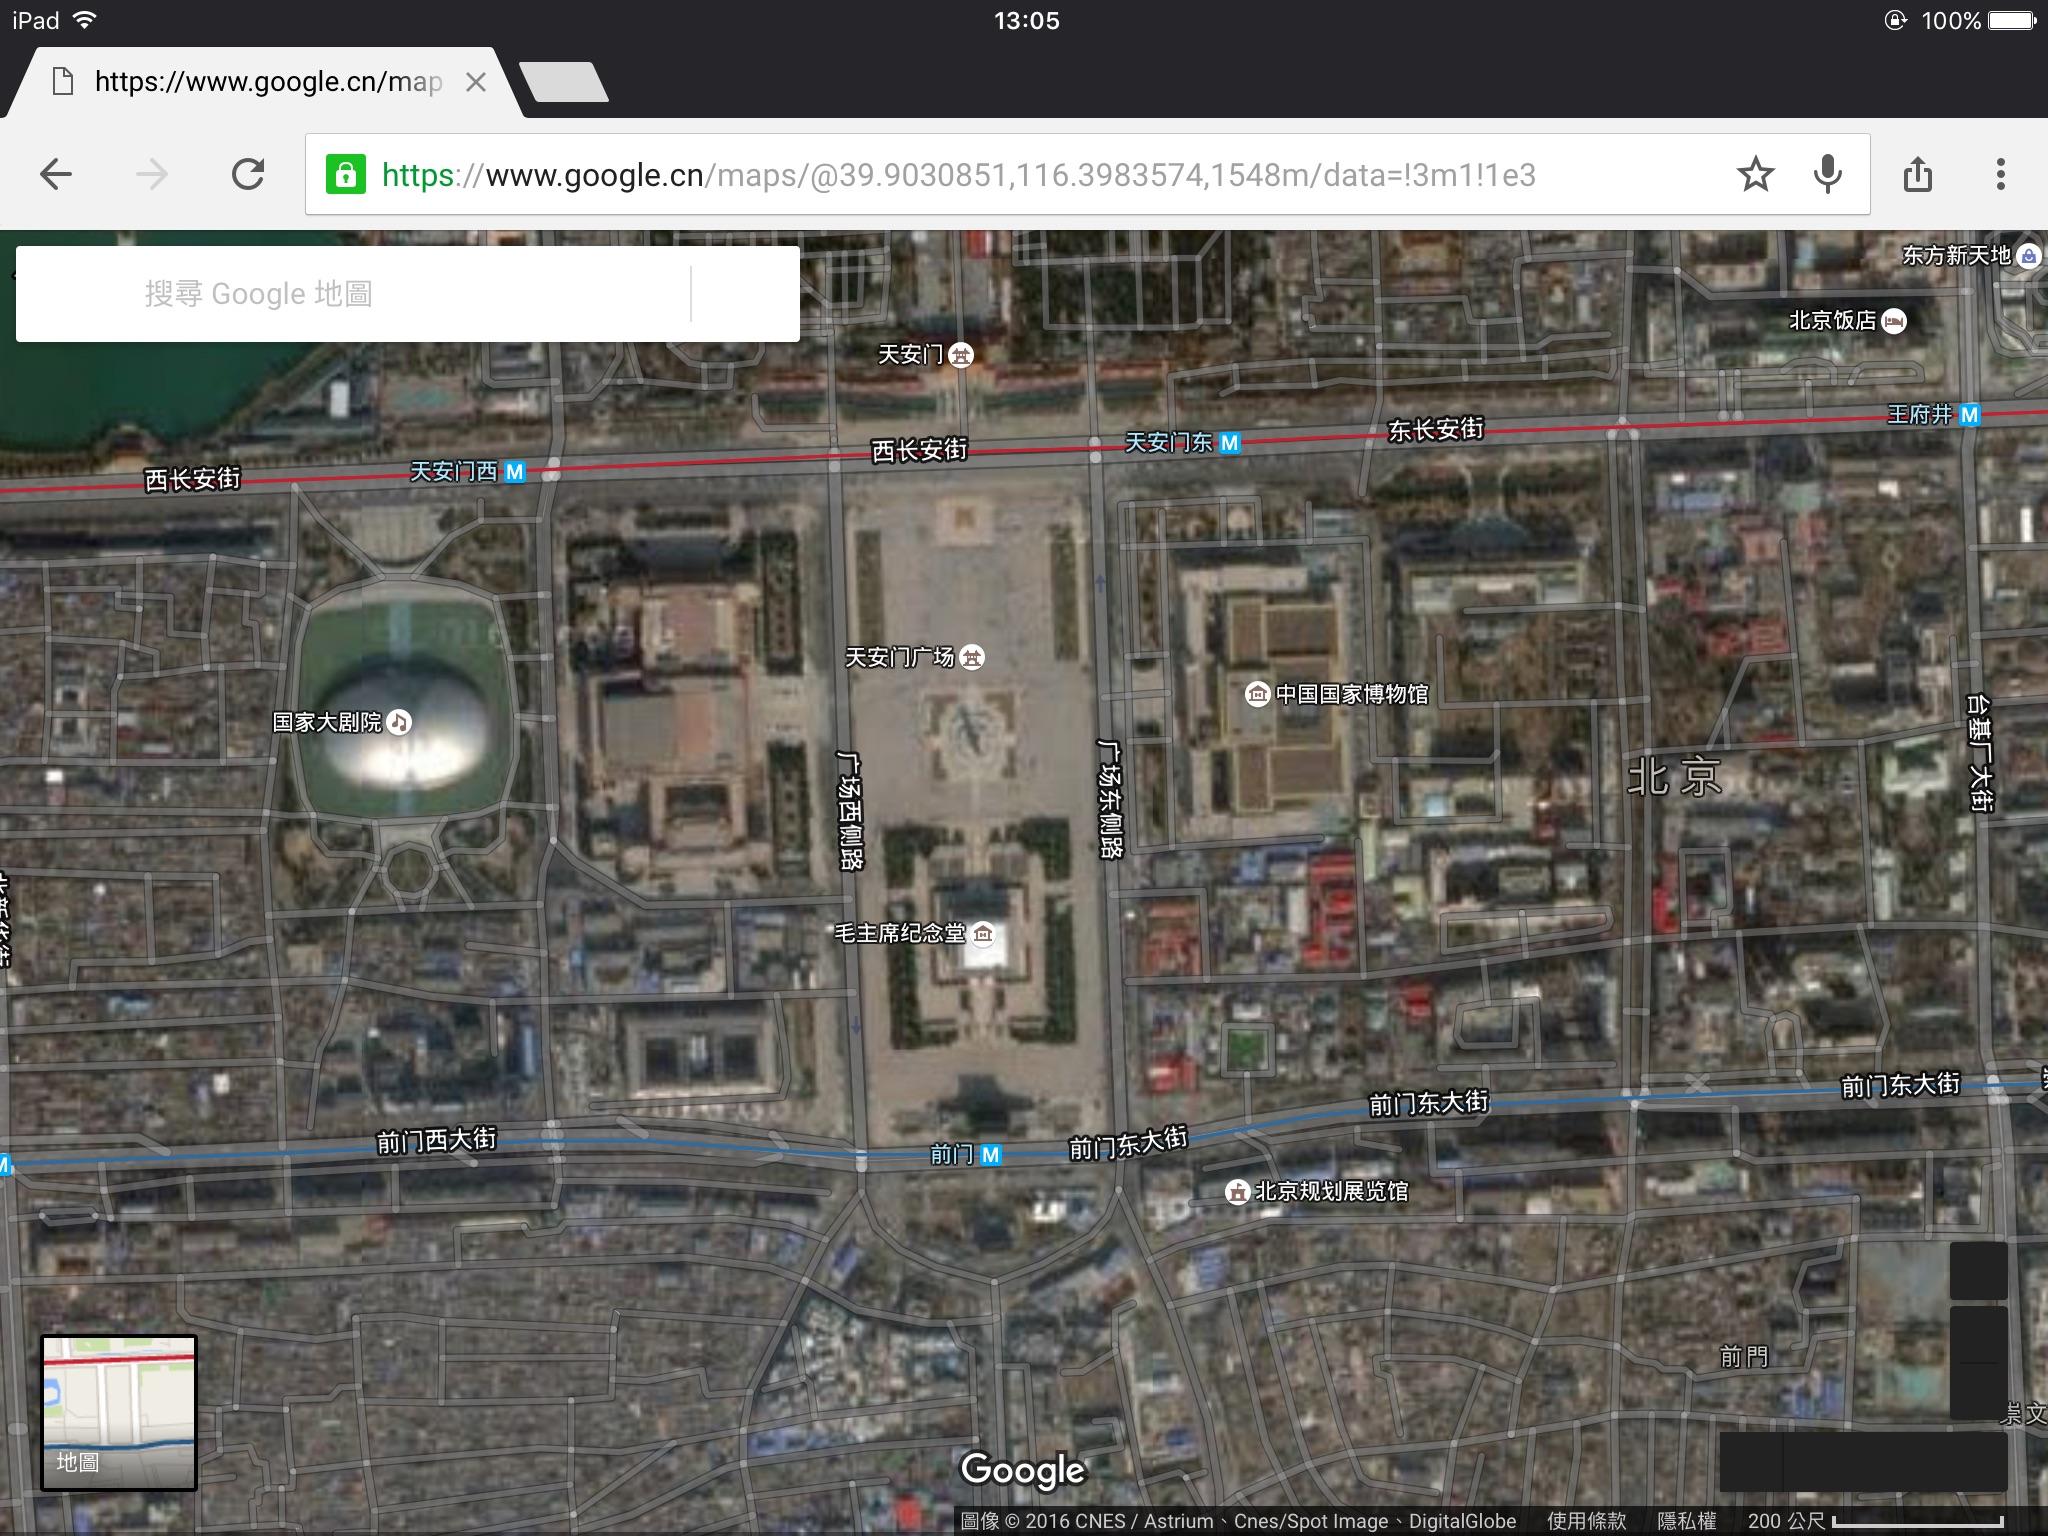 谷歌地图的卫星图像功能在中国大陆被禁用了吗